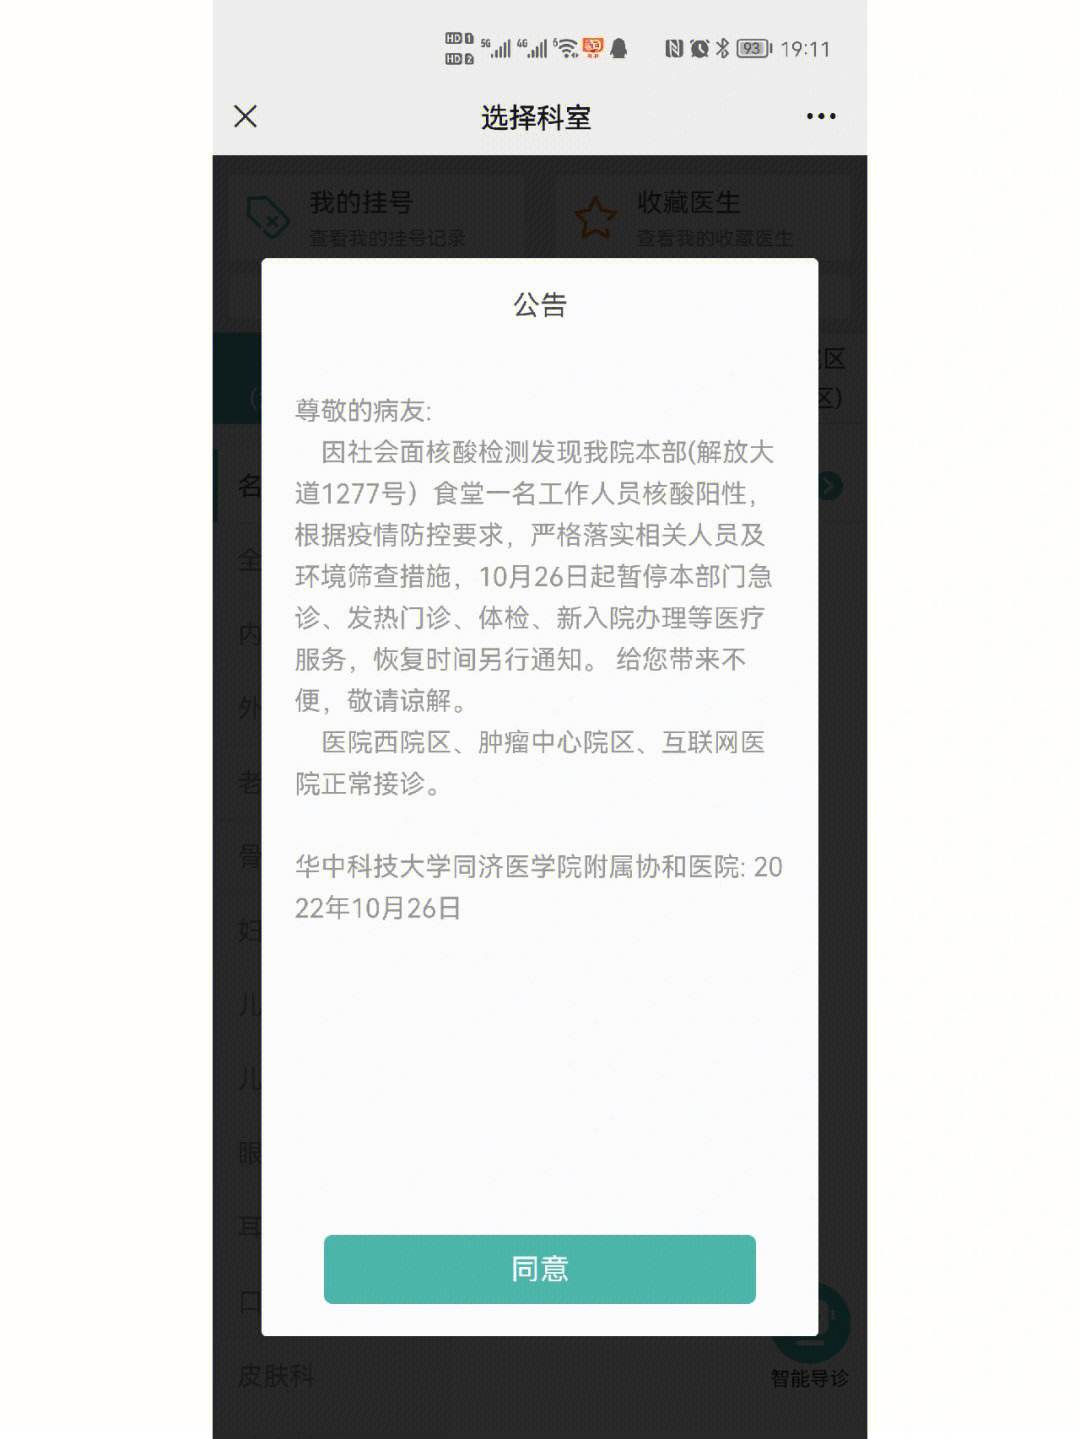 武汉战疫app苹果版下载苹果手机无法下载app此时无法安装